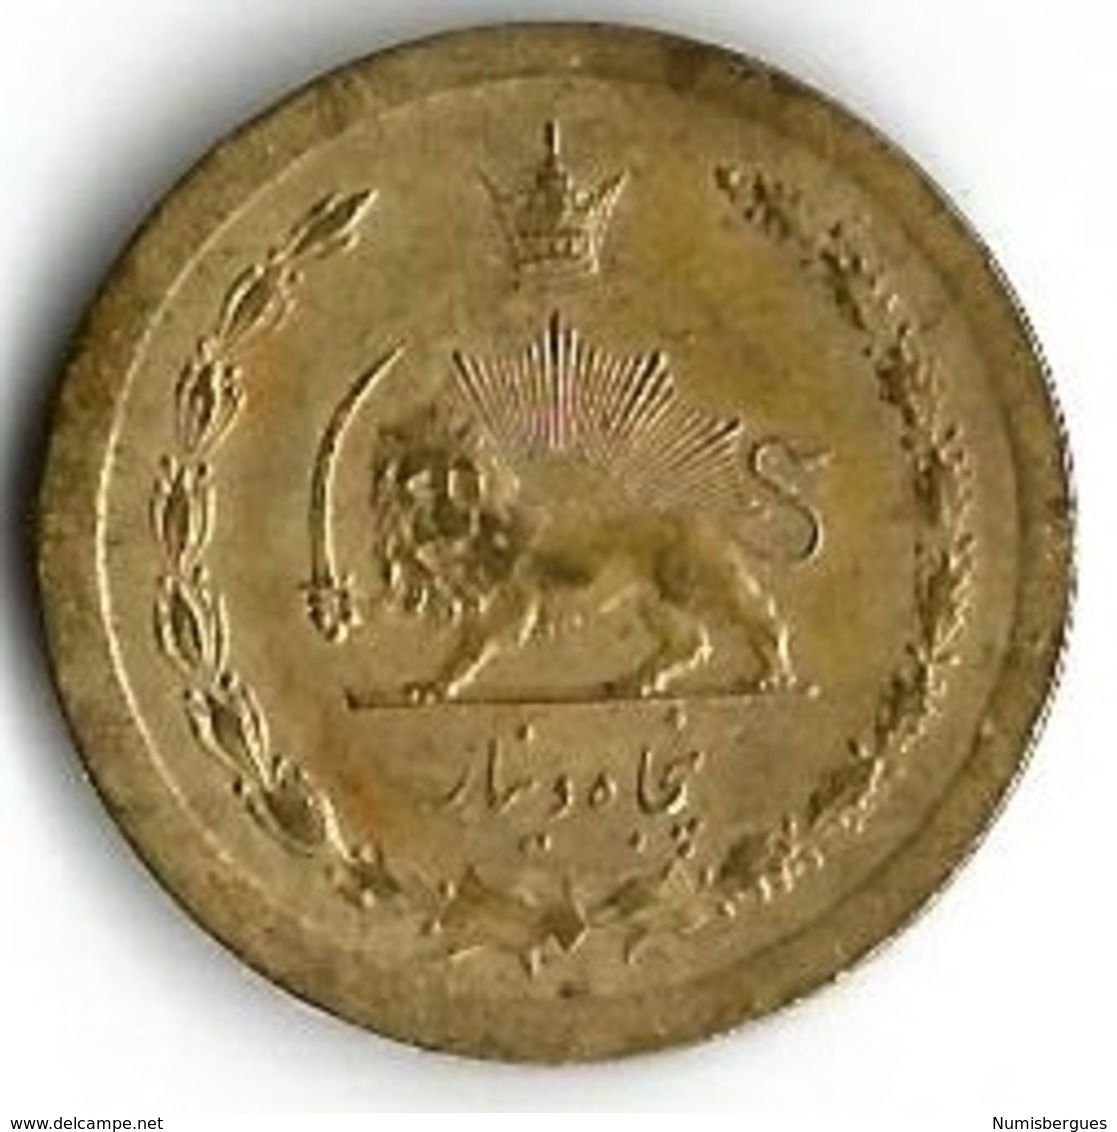 1 Pièce De Monnaie 50 Dinars 1969 - Iran